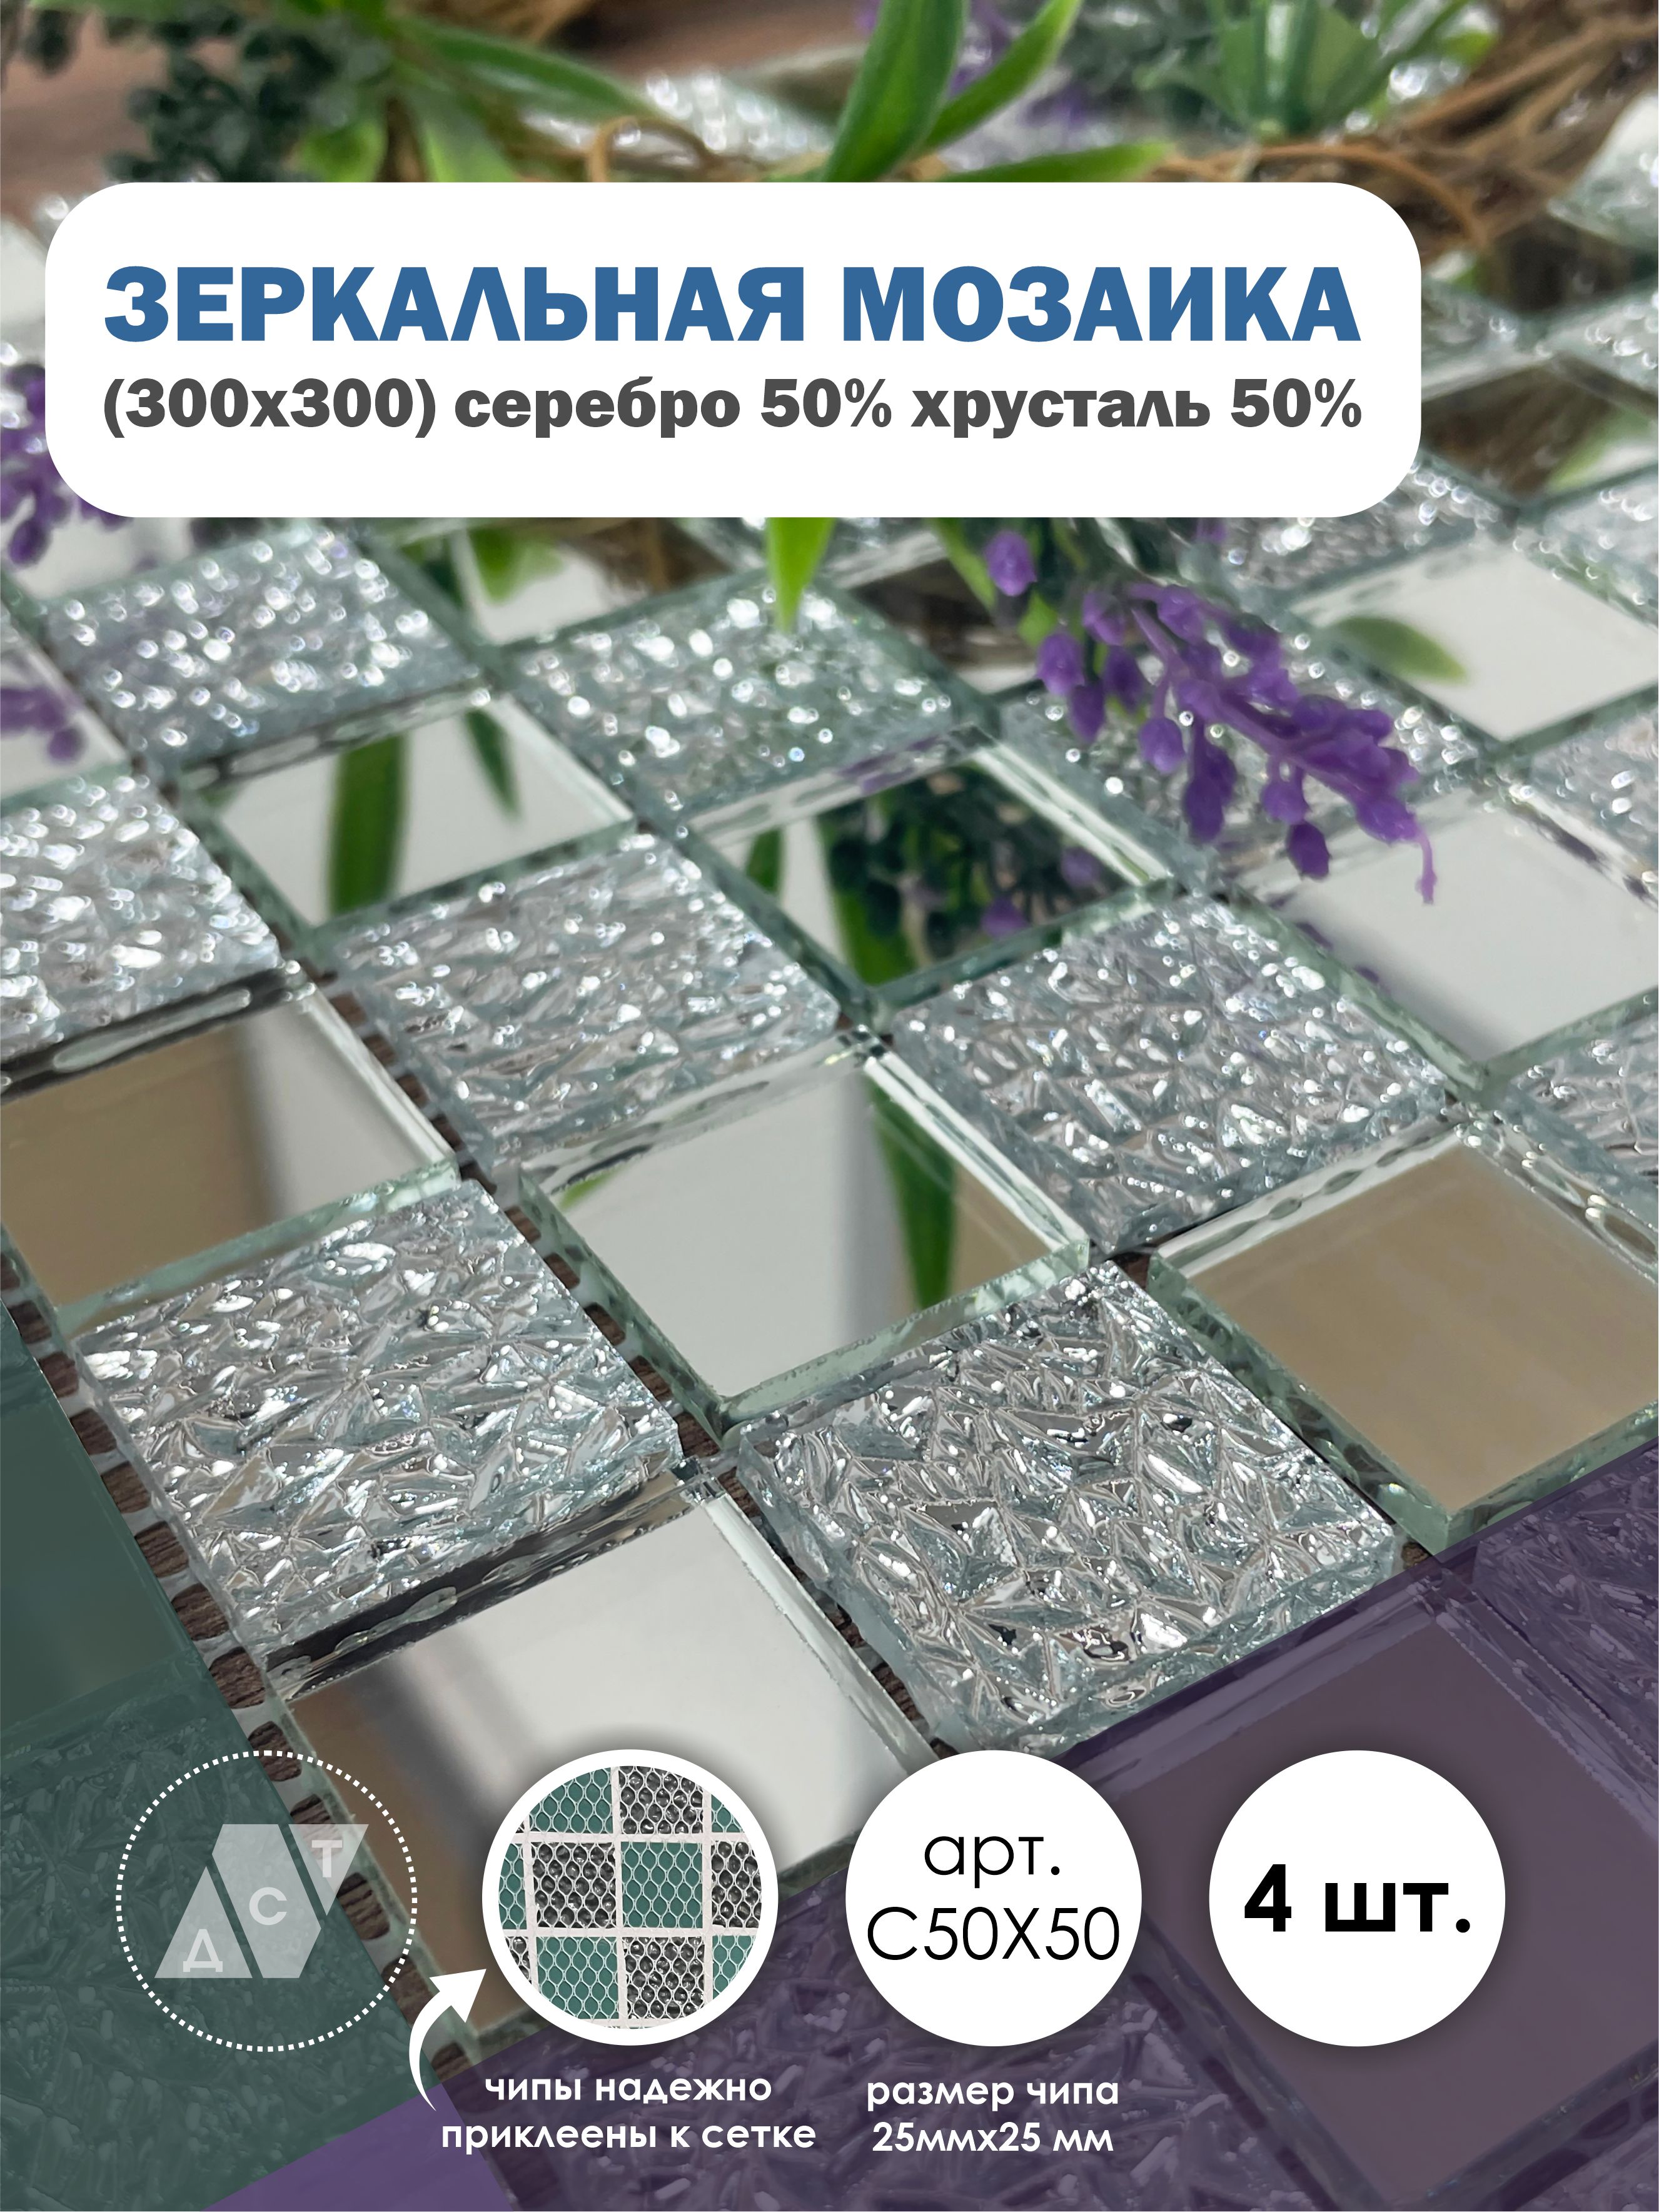 фото Зеркальная мозаика на сетке, дст, 300х300 мм, серебро 50% + хрусталь 50% (4 листа) дом стекольных технологий